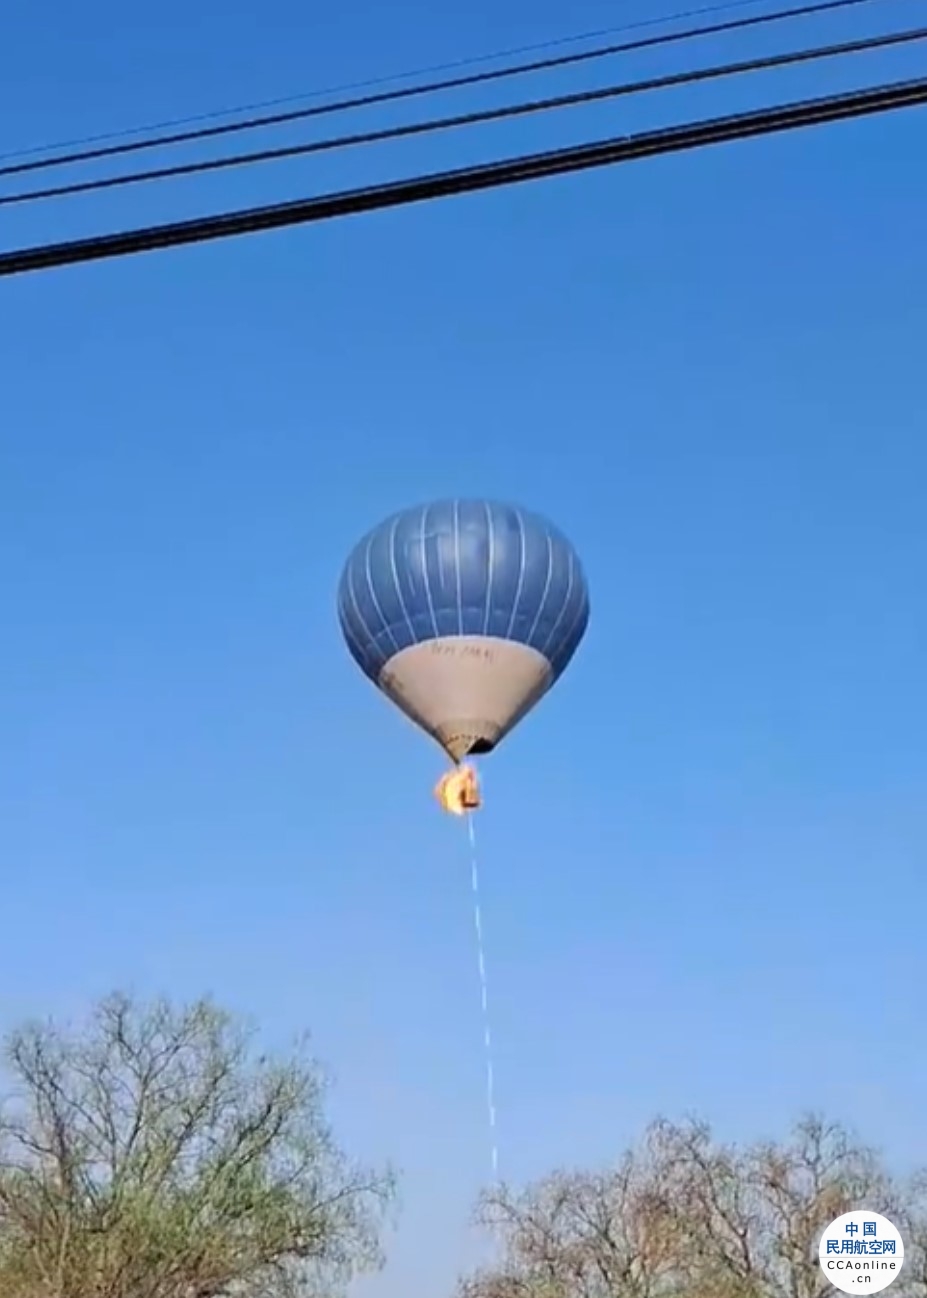 墨西哥一热气球起火坠毁 致2人遇难